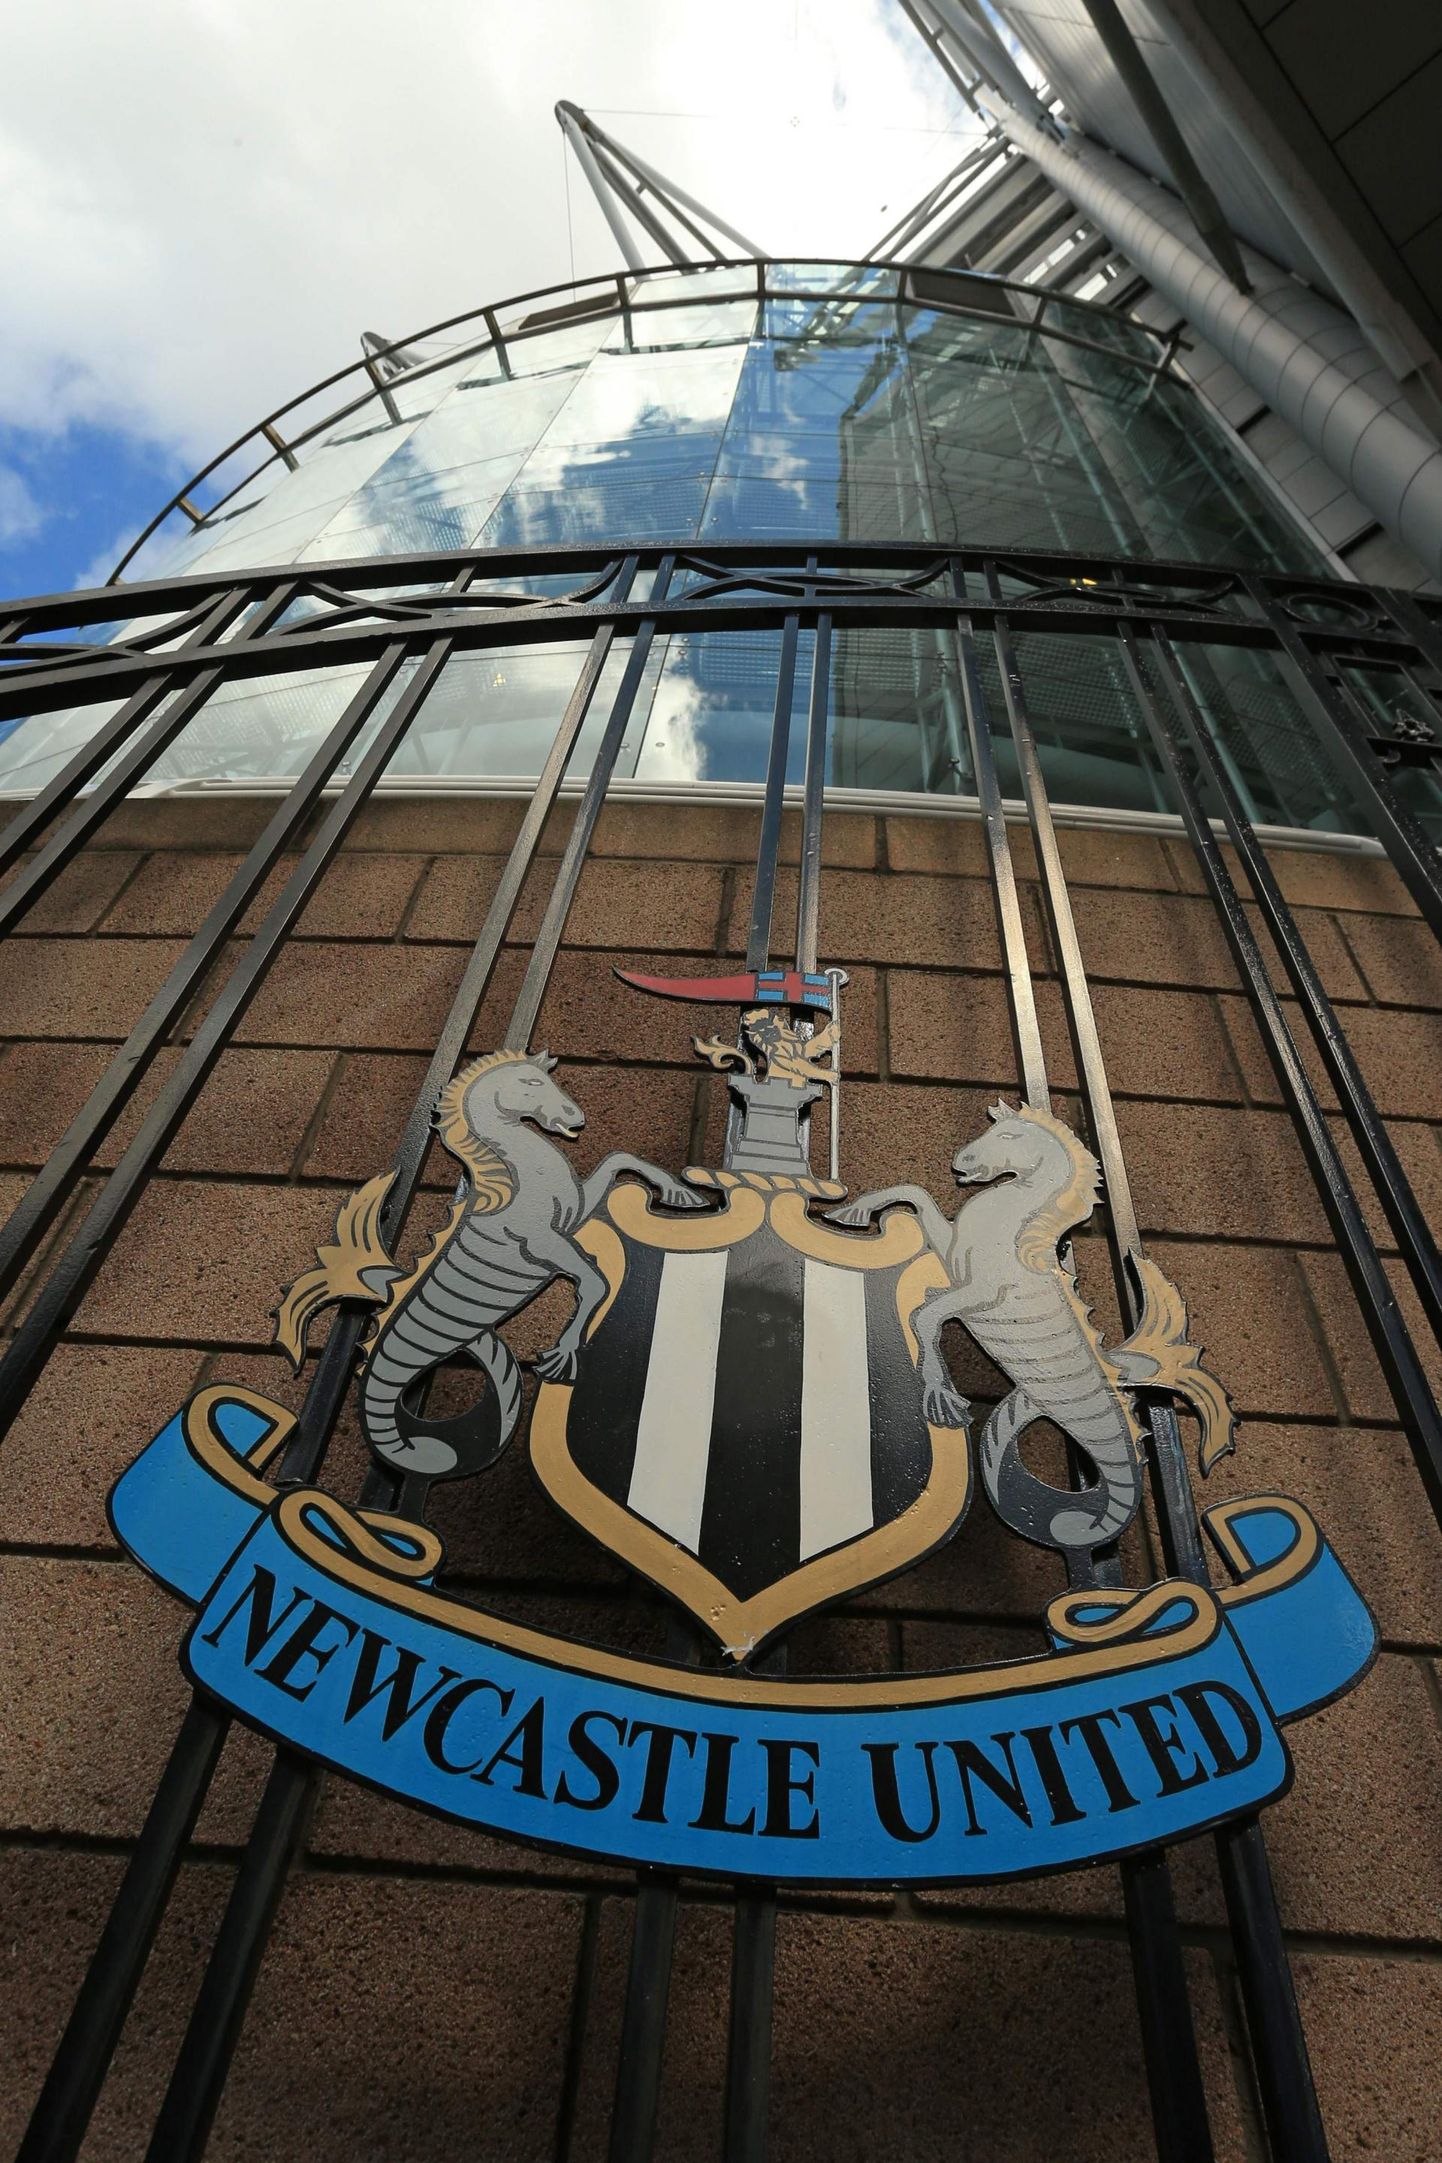 Newcastle Unitedit on ees ootamas suur muutus. Fännid loodavad, et klubi rühib nüüd ülesmäge.